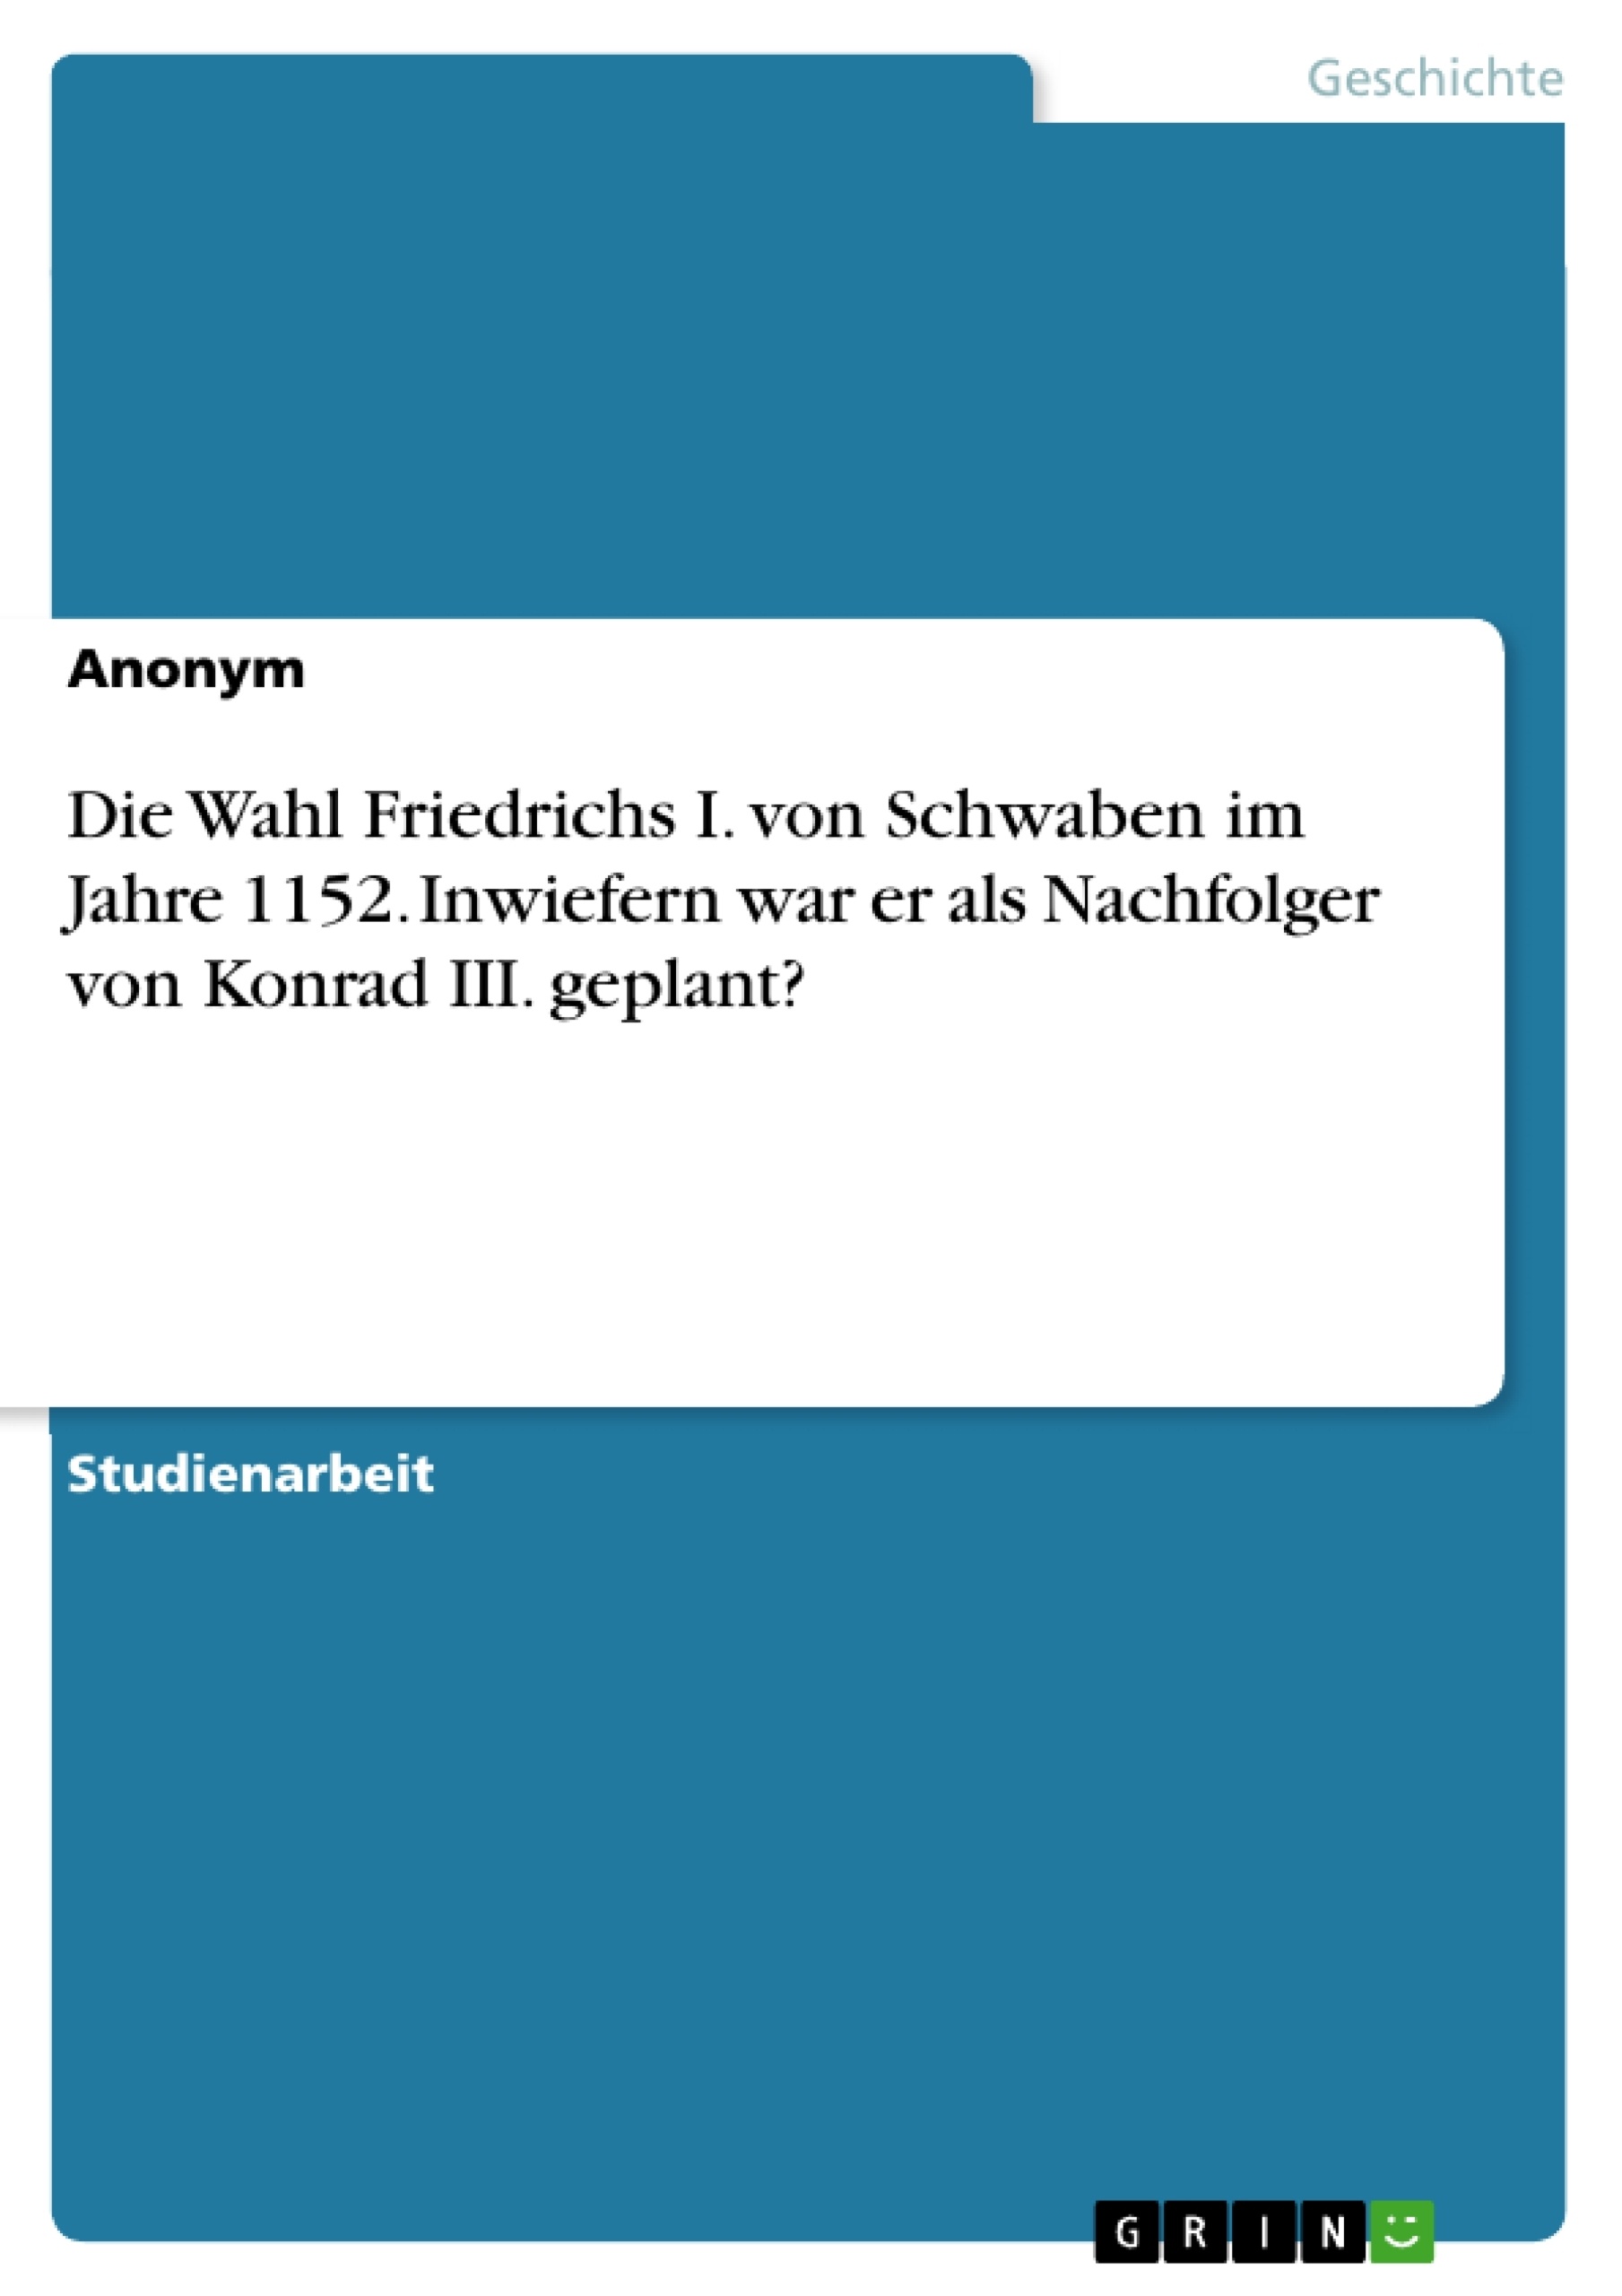 Title: Die Wahl Friedrichs I. von Schwaben im Jahre 1152. Inwiefern war er als Nachfolger von Konrad III. geplant?